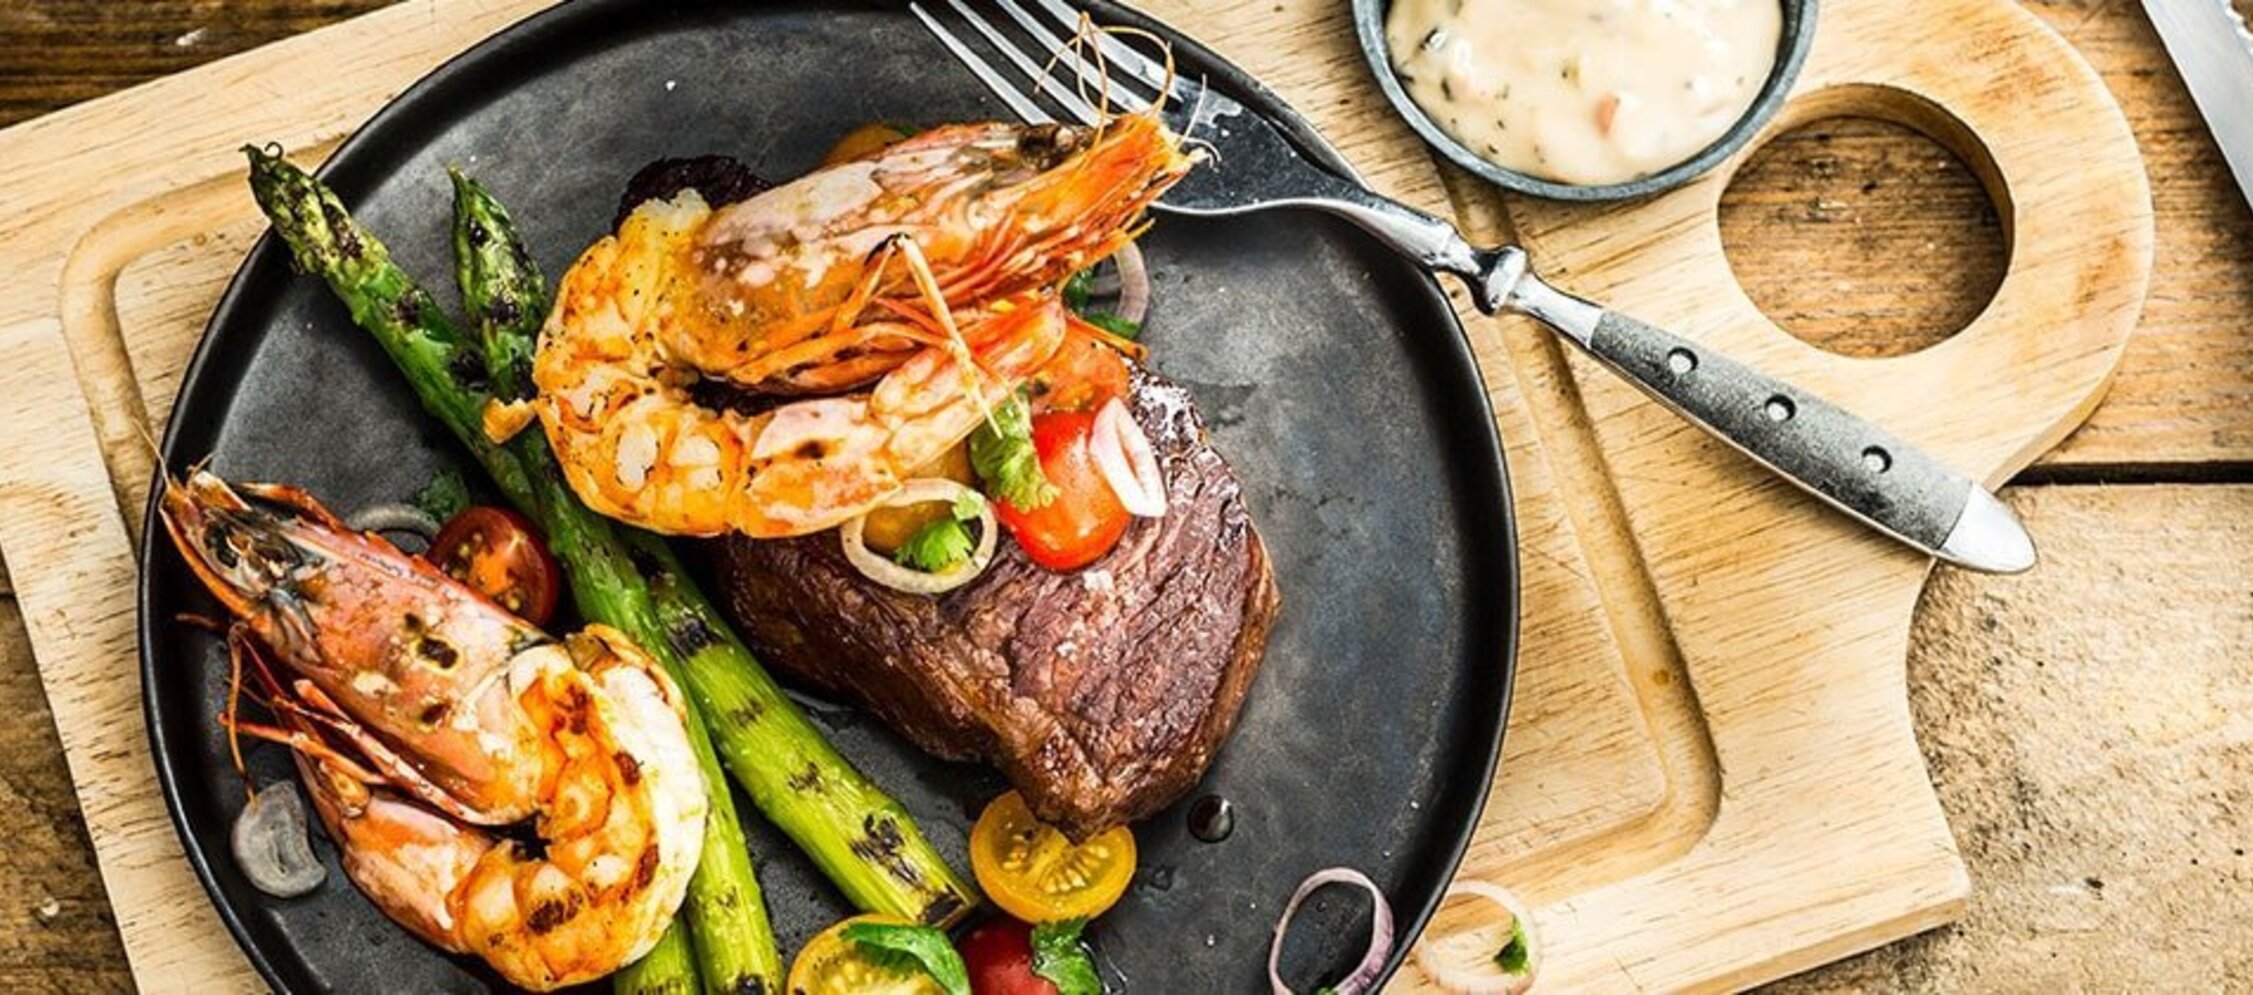 „Steak Oscar“ – Rumpsteak mit Garnelen und grünem Spargel 